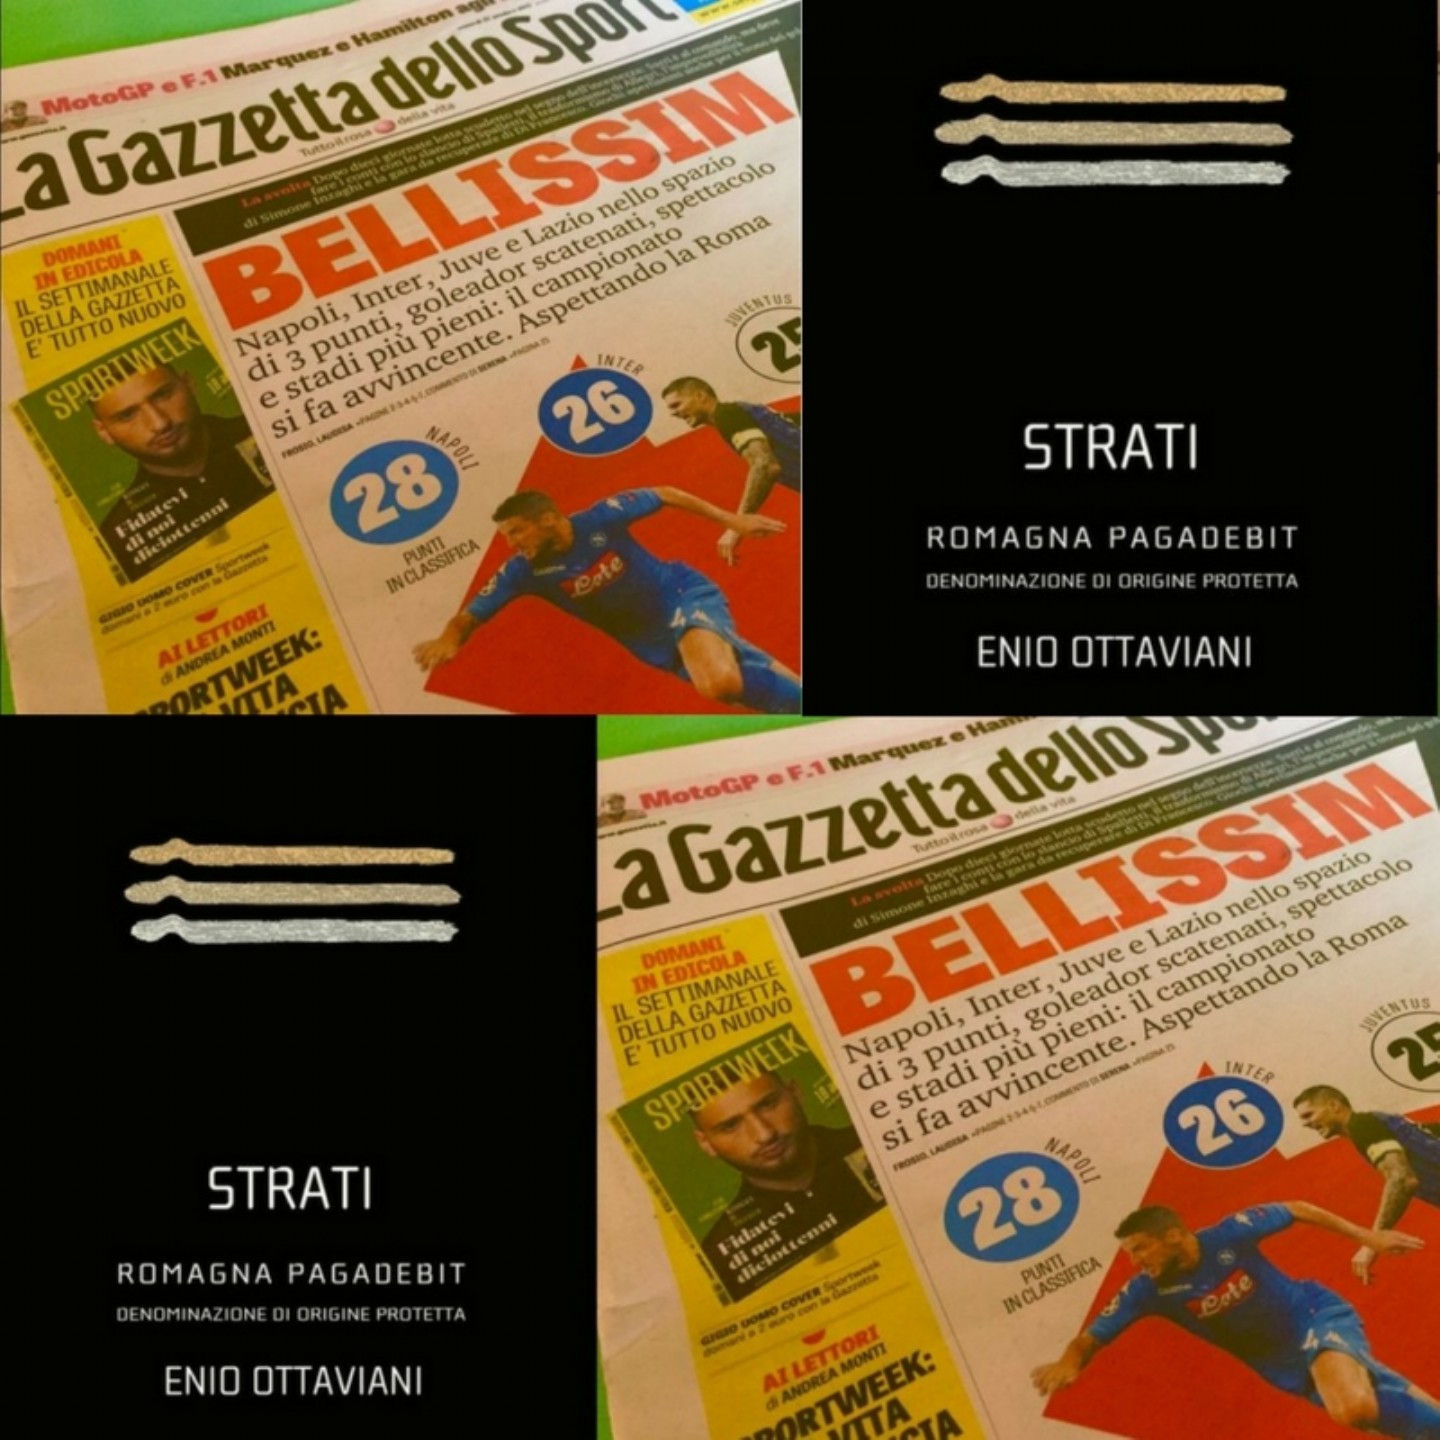 Strati and La Gazzetta dello Sport 